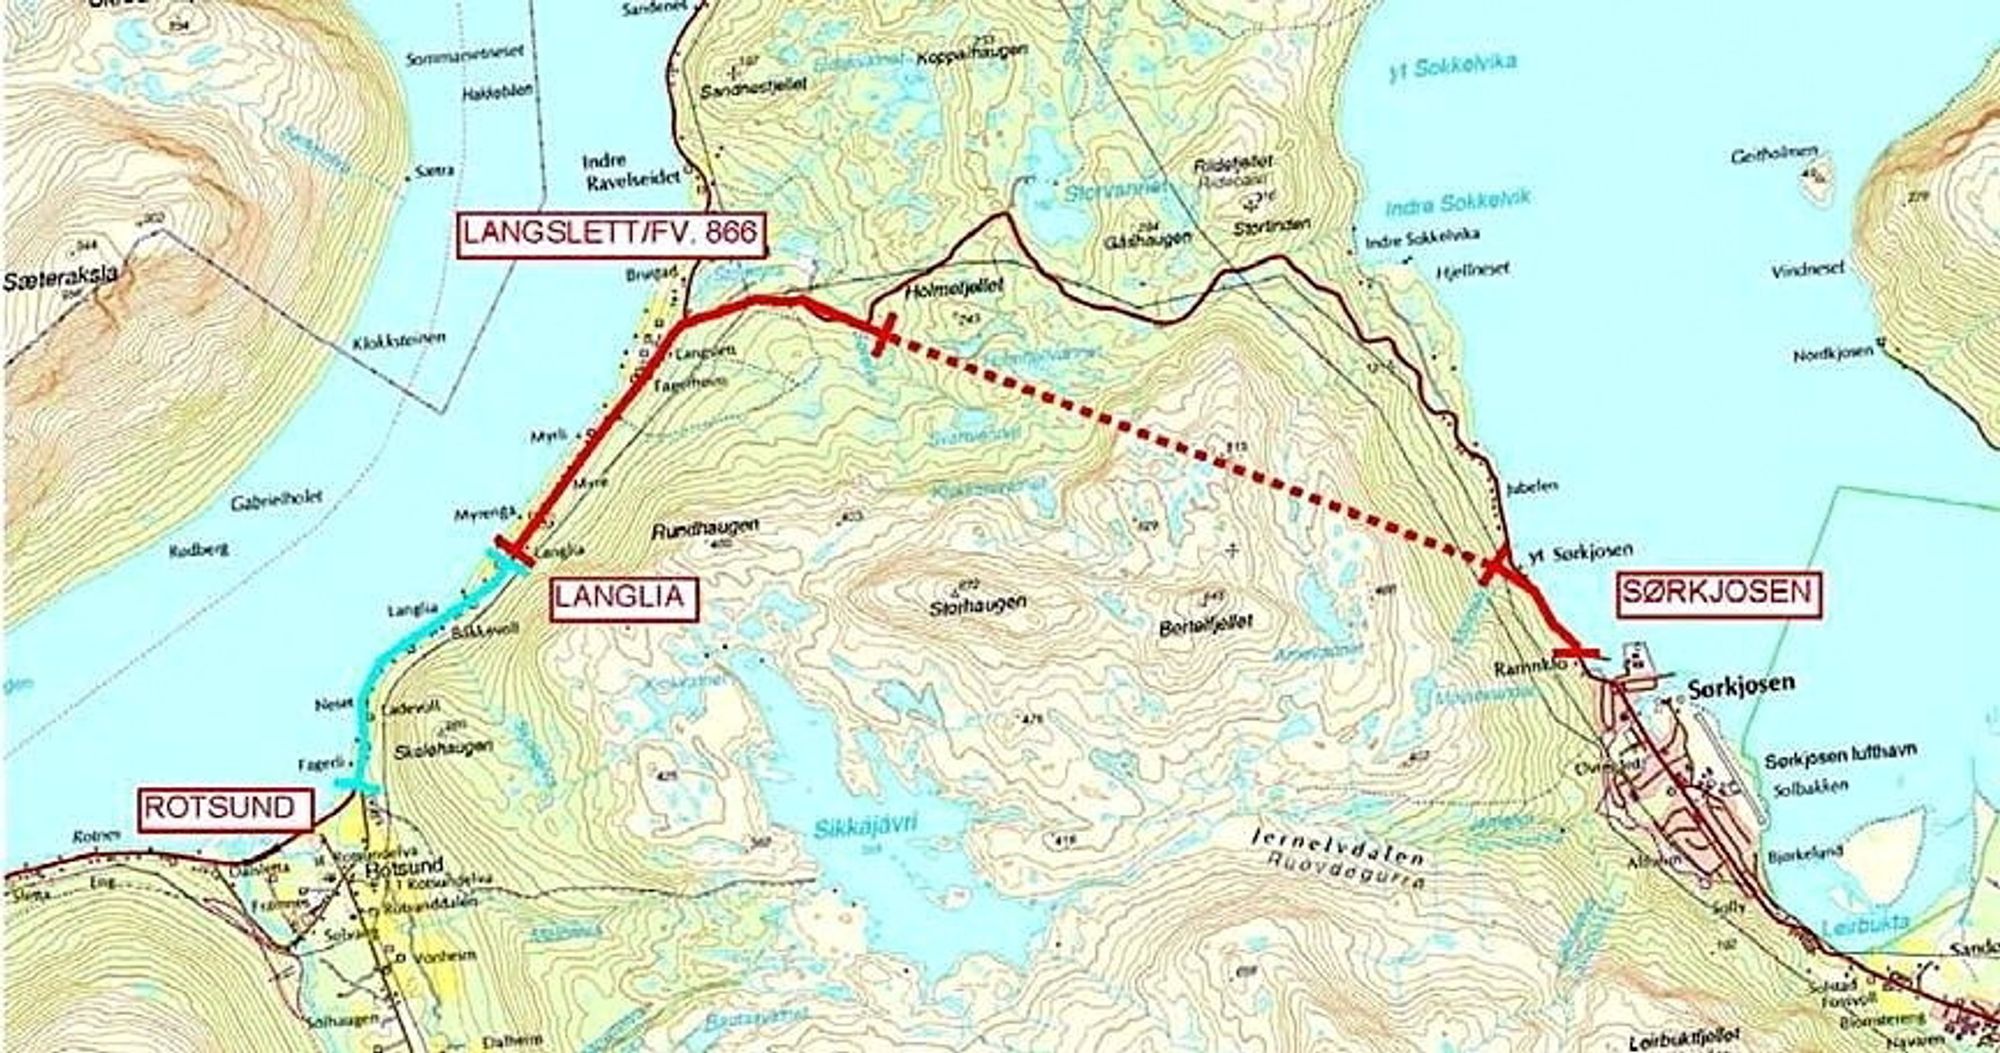 350 000 kbm skal sprenges ut fra tunnelen gjennom Sørkjosfjellet. Det blir lagret midlertidig i et grustak og senere brukt til vegformål. (Ill.: Statens vegvesen)